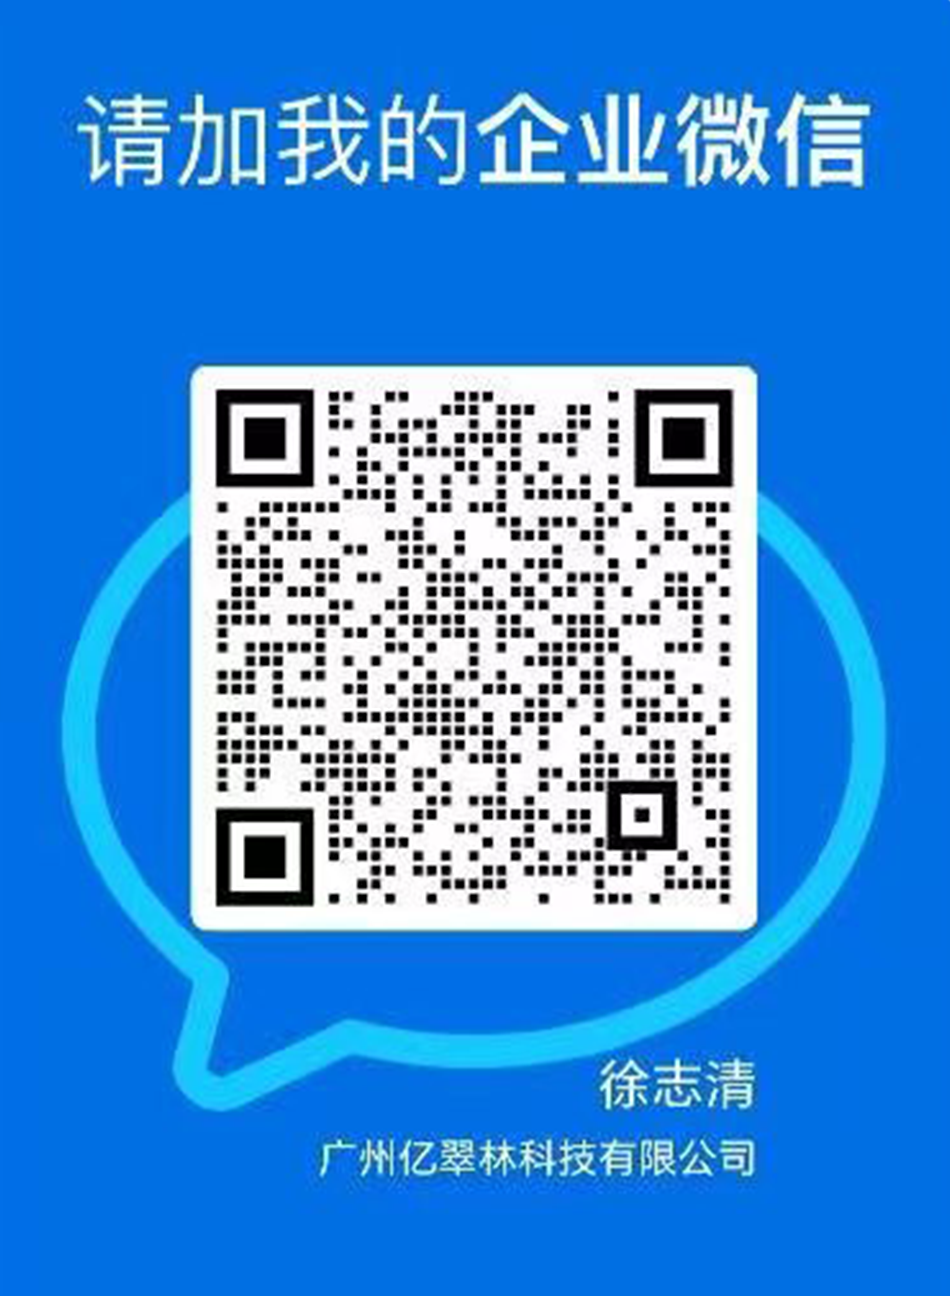 徐志清 企业微信二维码